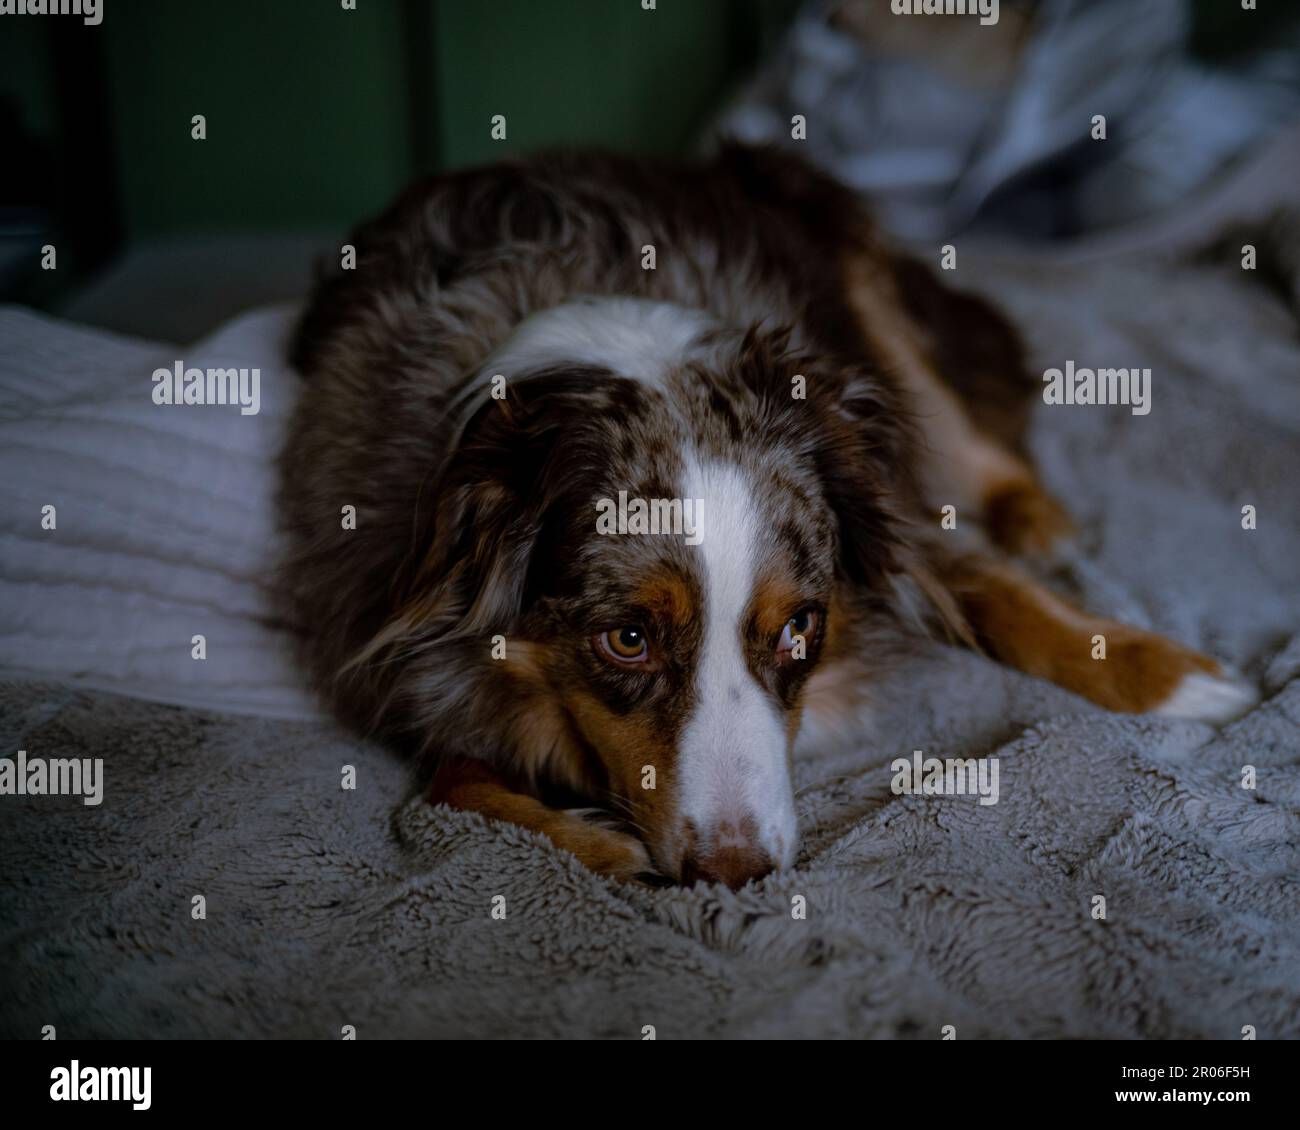 Un chien marron s'est emmêlé sur une couverture confortable pour profiter d'un moment de détente Banque D'Images